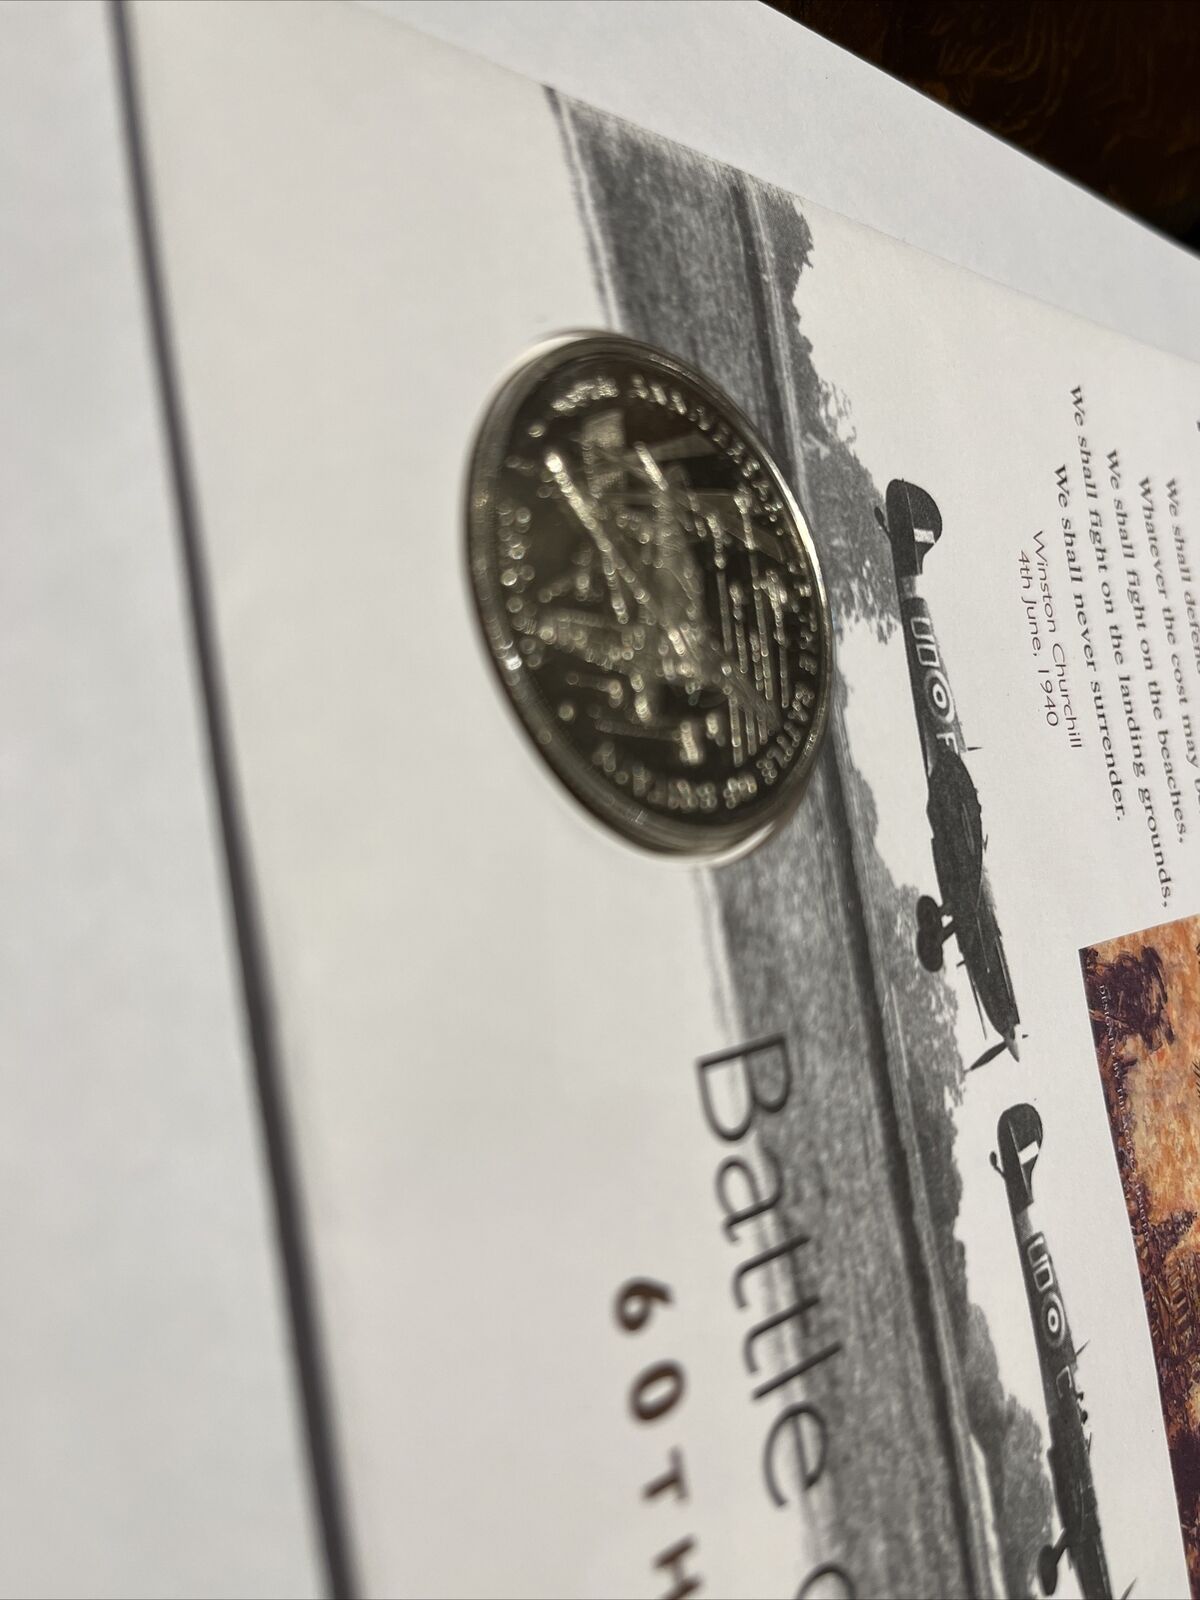 Commemorative Coin Cover